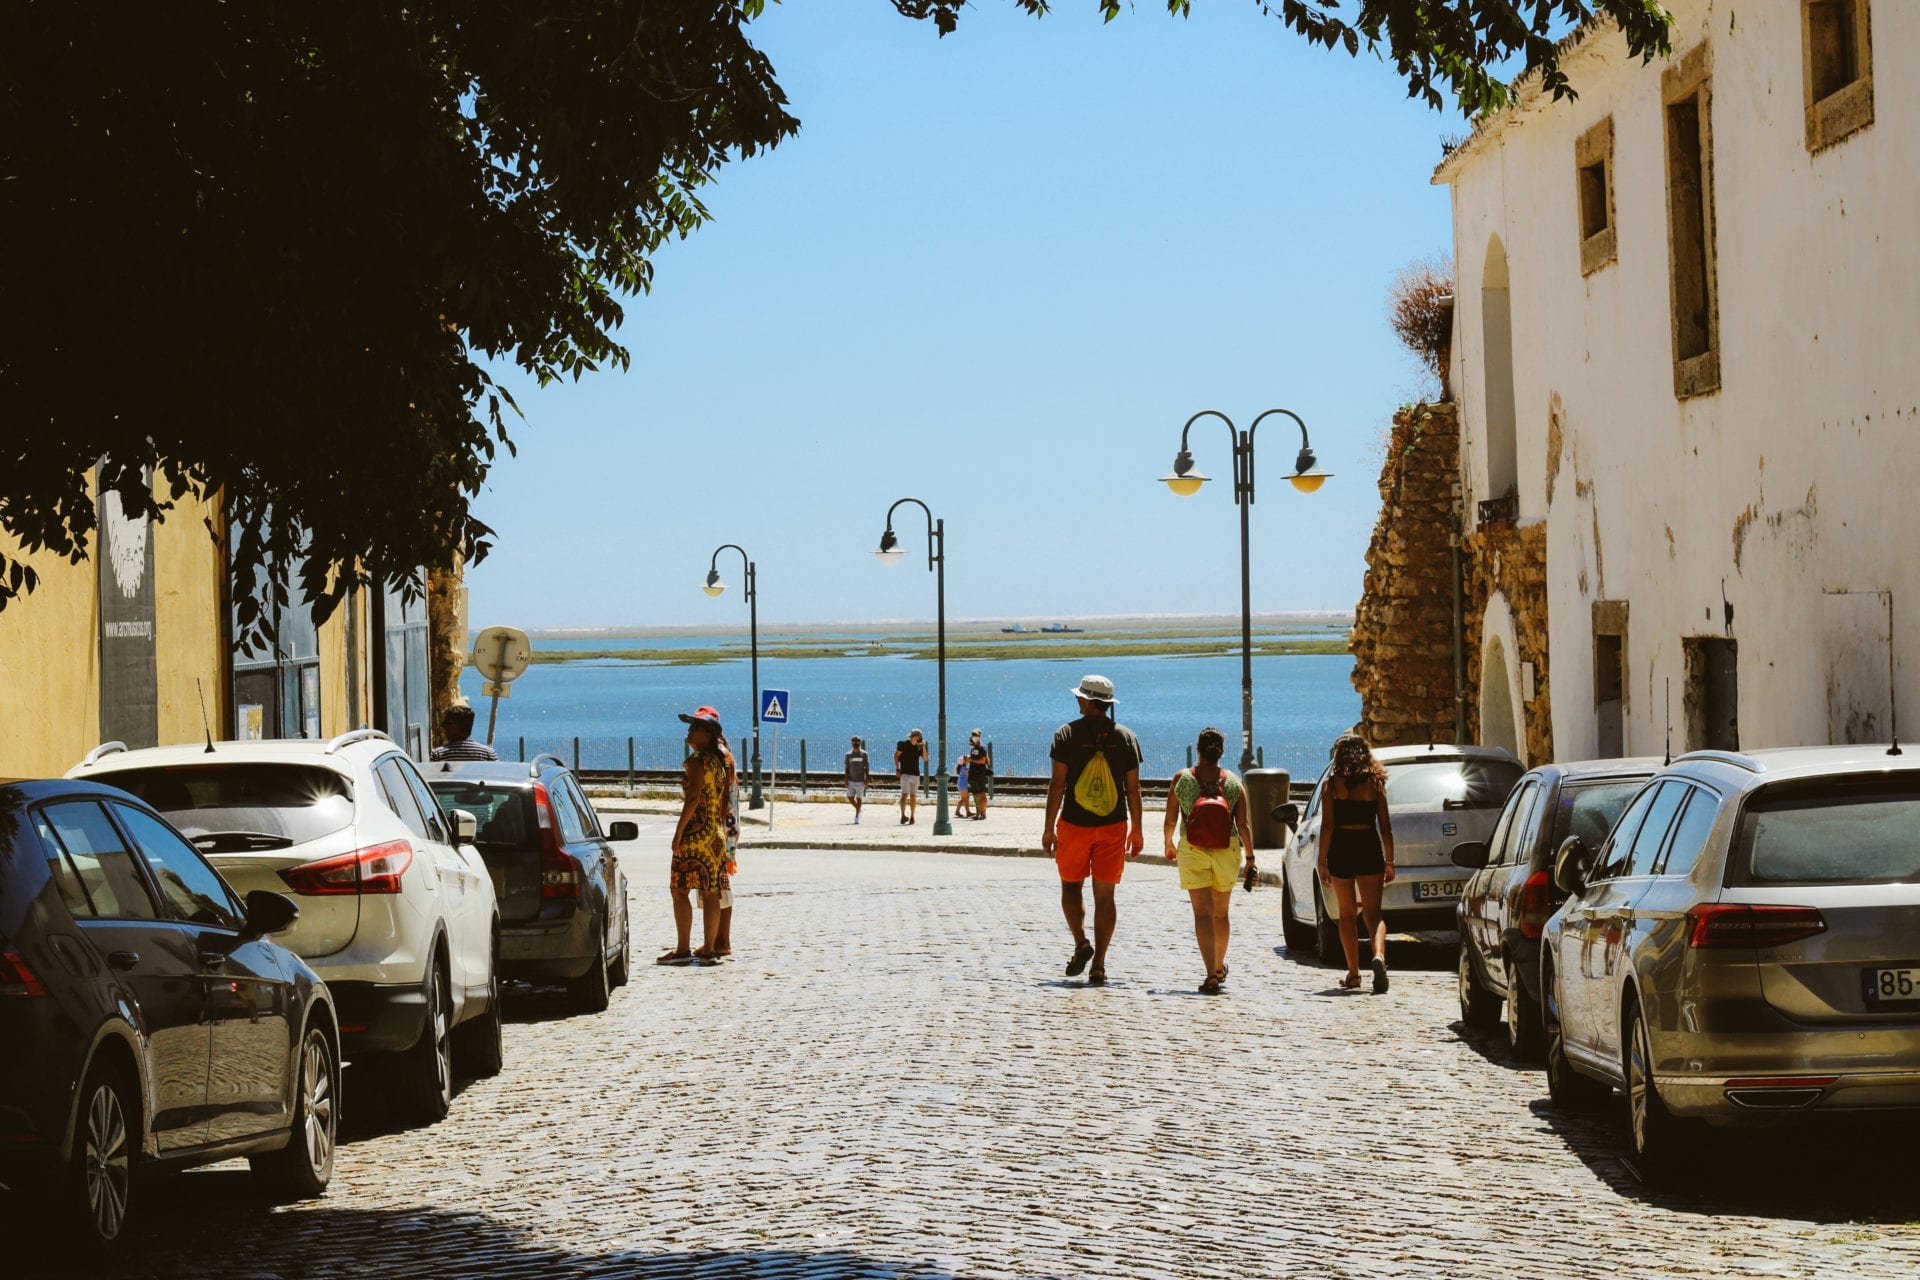 Algarve diesen August. Wie Corona den Tourismus beeinflusst and what in autumn zu erwarten.